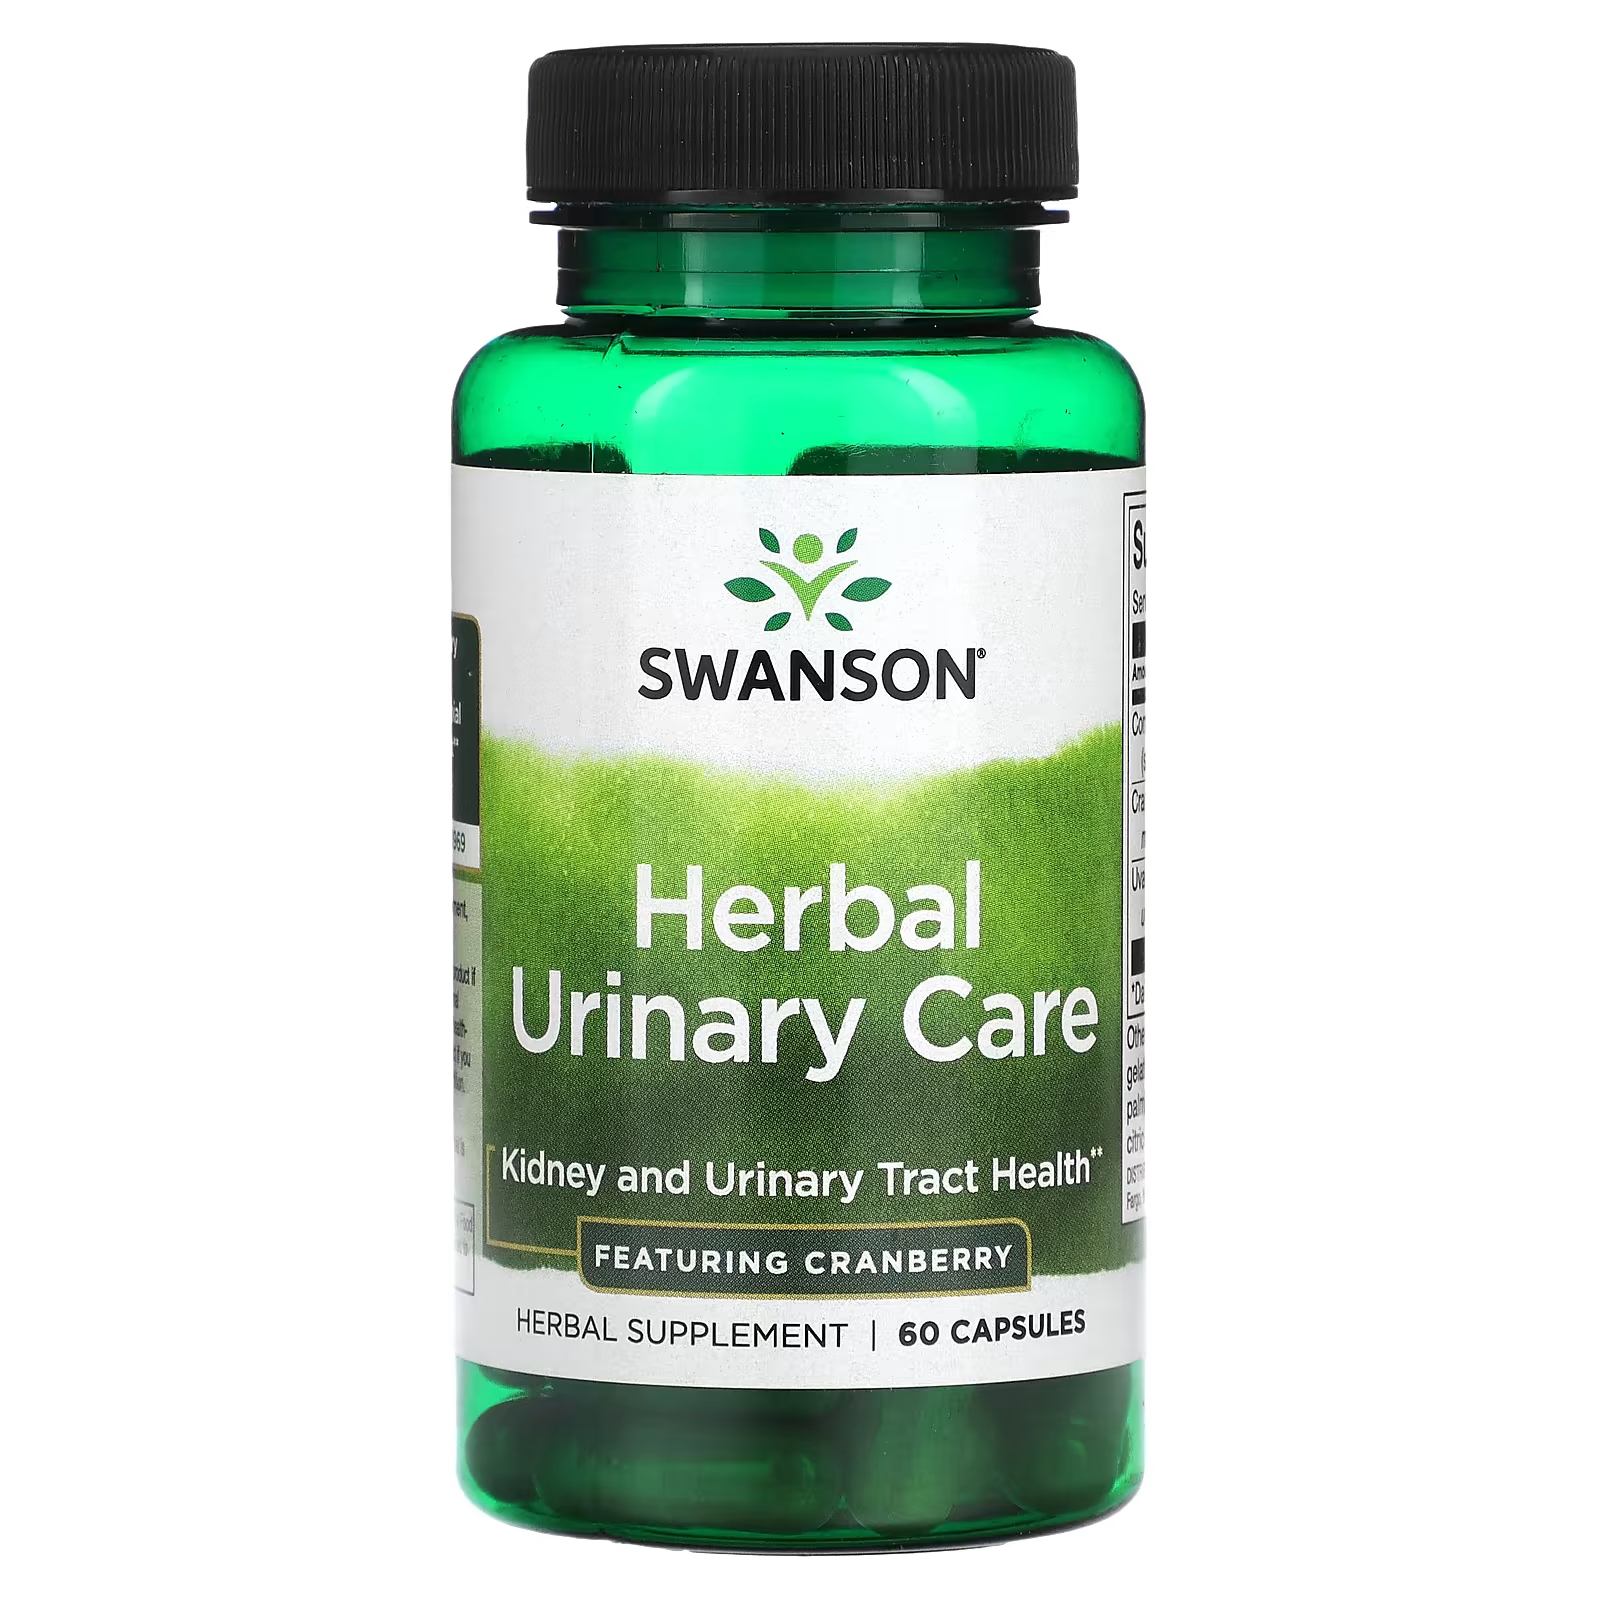 Растительная добавка Swanson Herbal Urinary Care, 60 капсул бад нефробест для мочевыводящих путей и почек 60 капсул